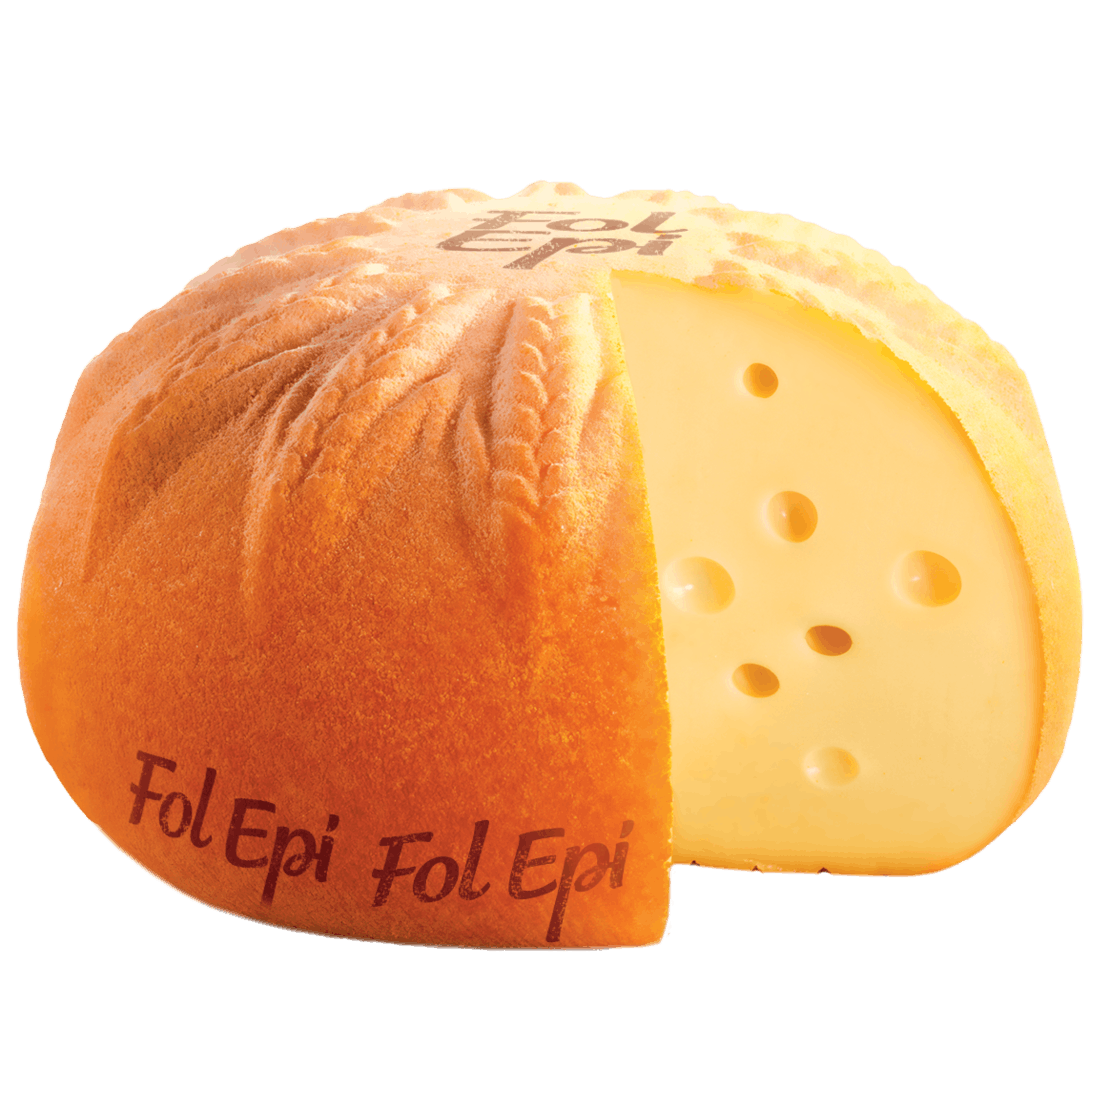 Fol Epi von der Käsetheke